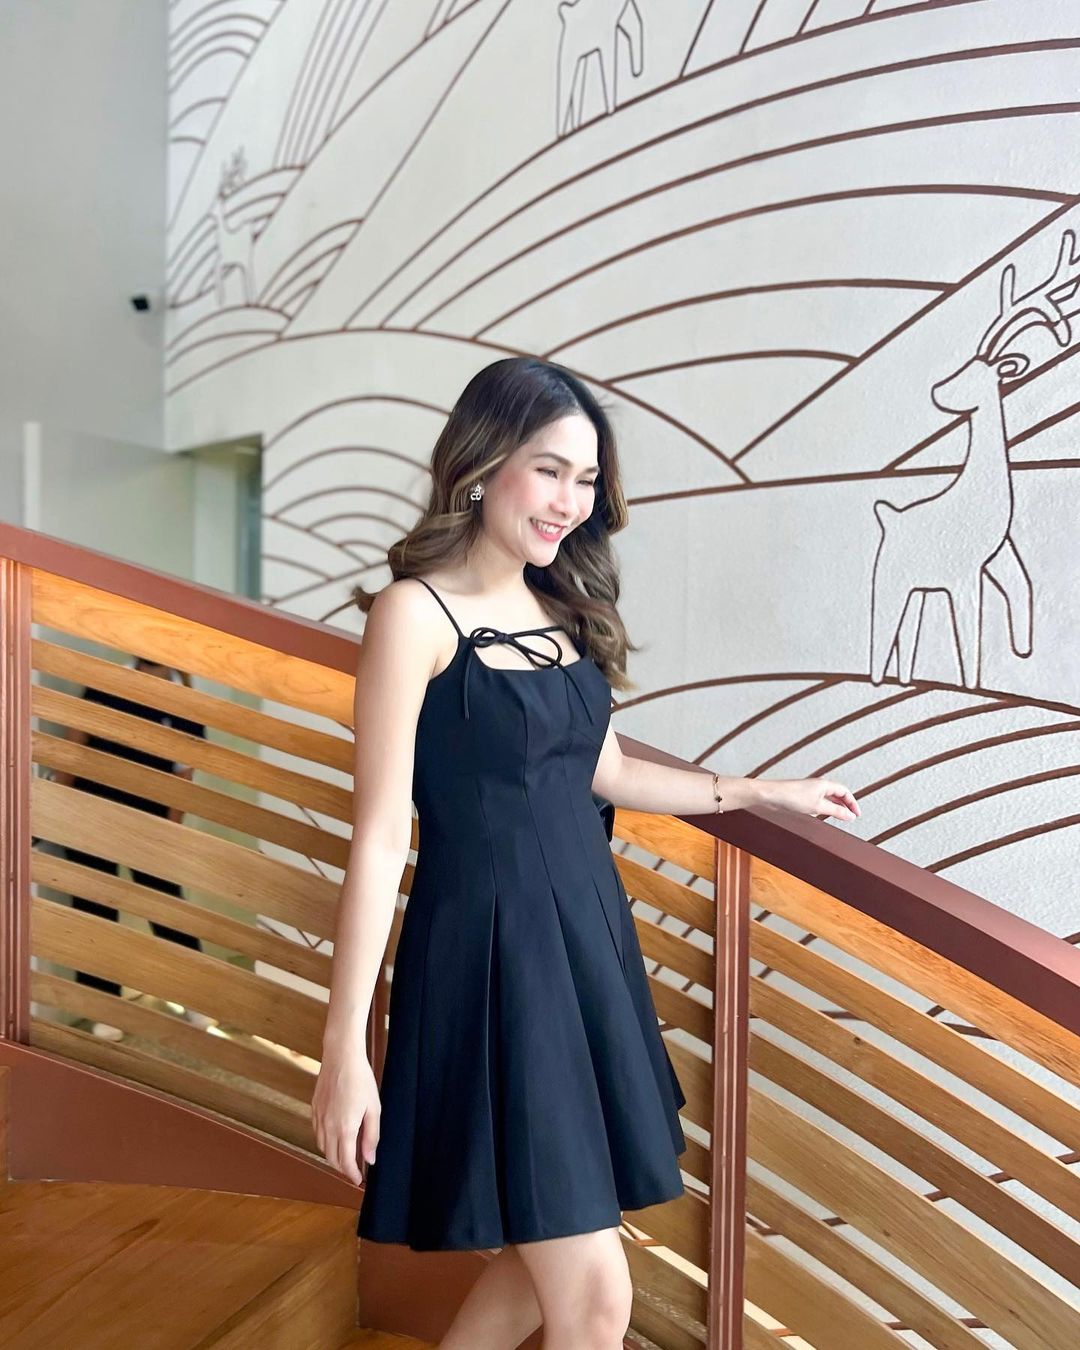 一位穿著來自 the.lookbook.select 的 Lily 迷你裙的女士微笑著站在樓梯上，樓梯上的裝飾牆飾有人物和鹿的線條藝術。